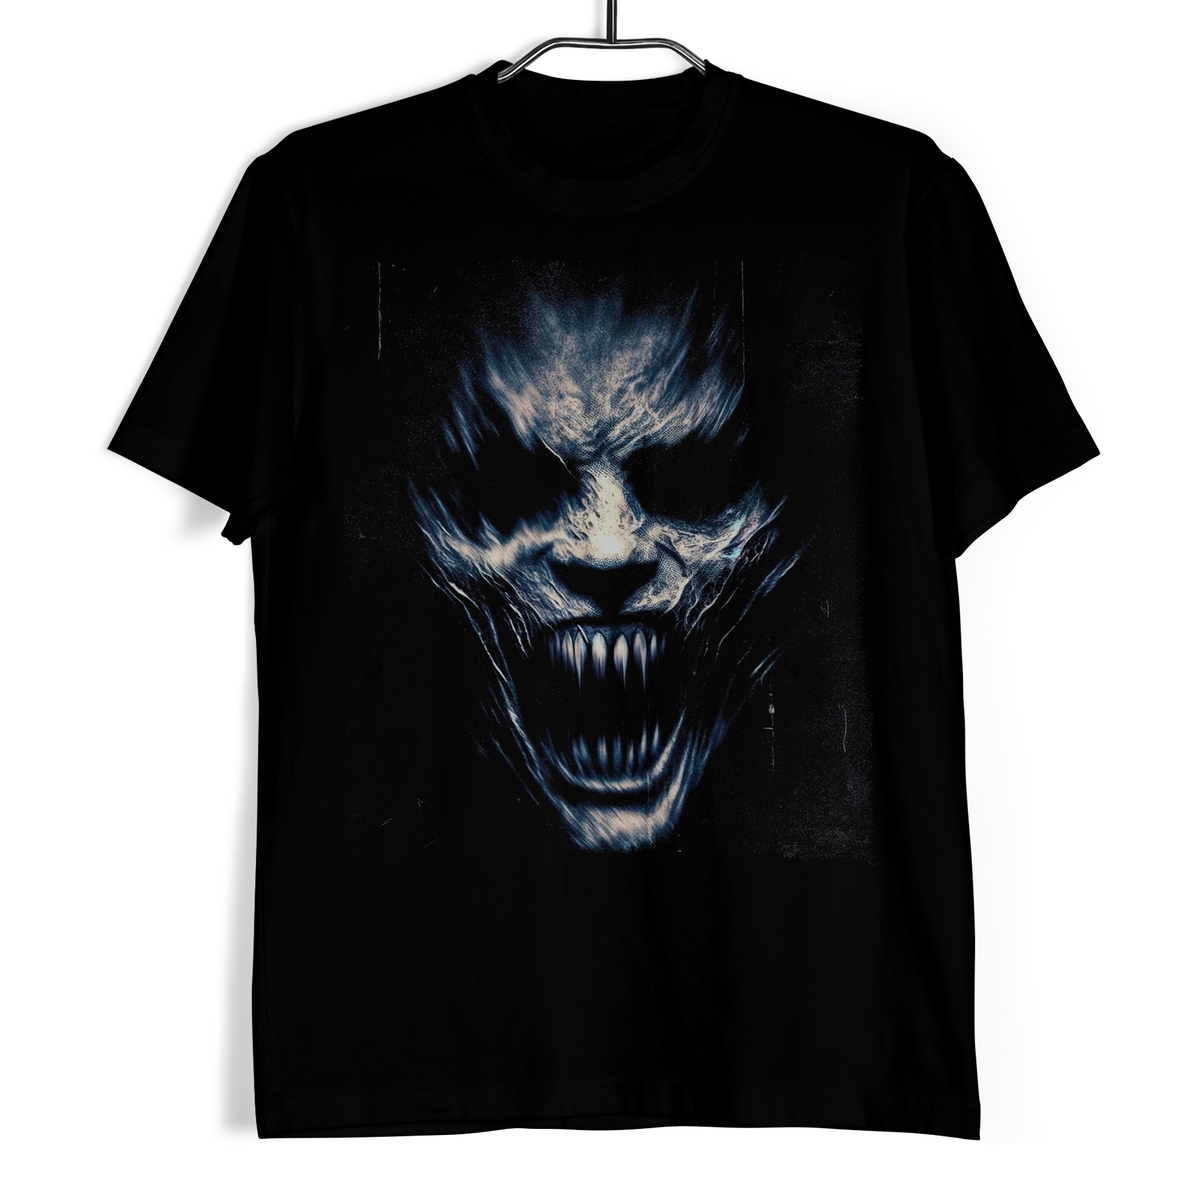 Tričko s lebkou - Temný Vřískot 3XL